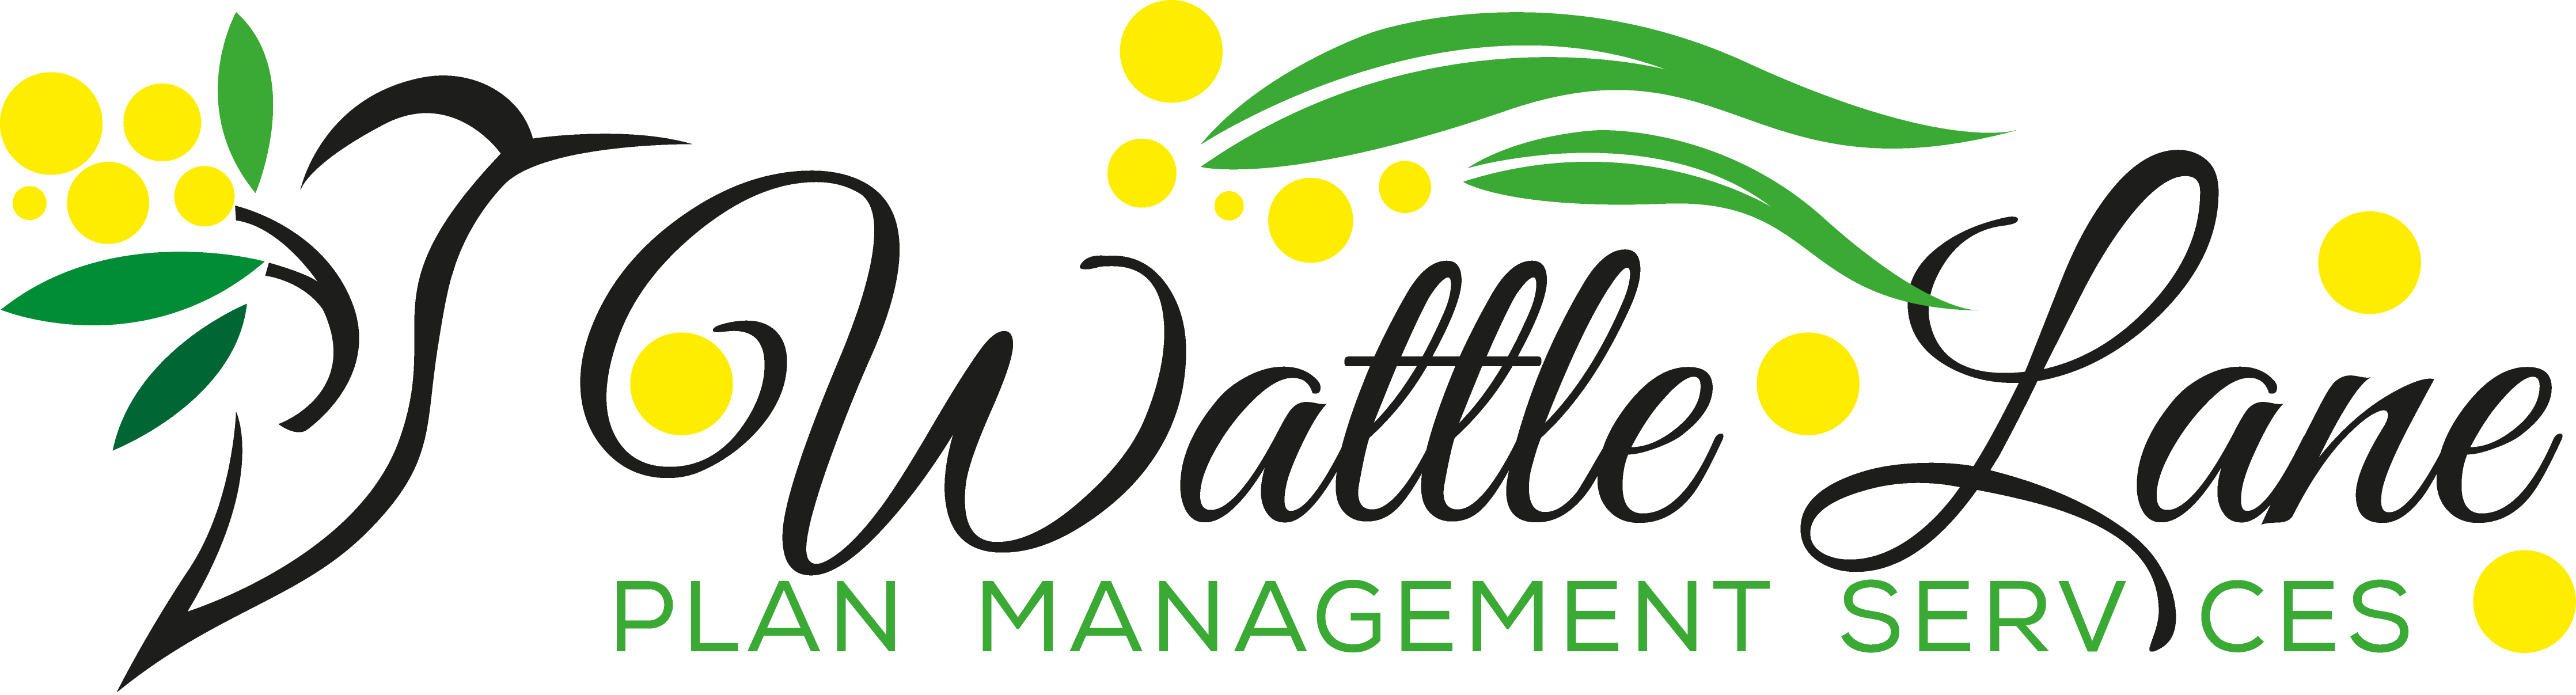 Wattle Lane Logo